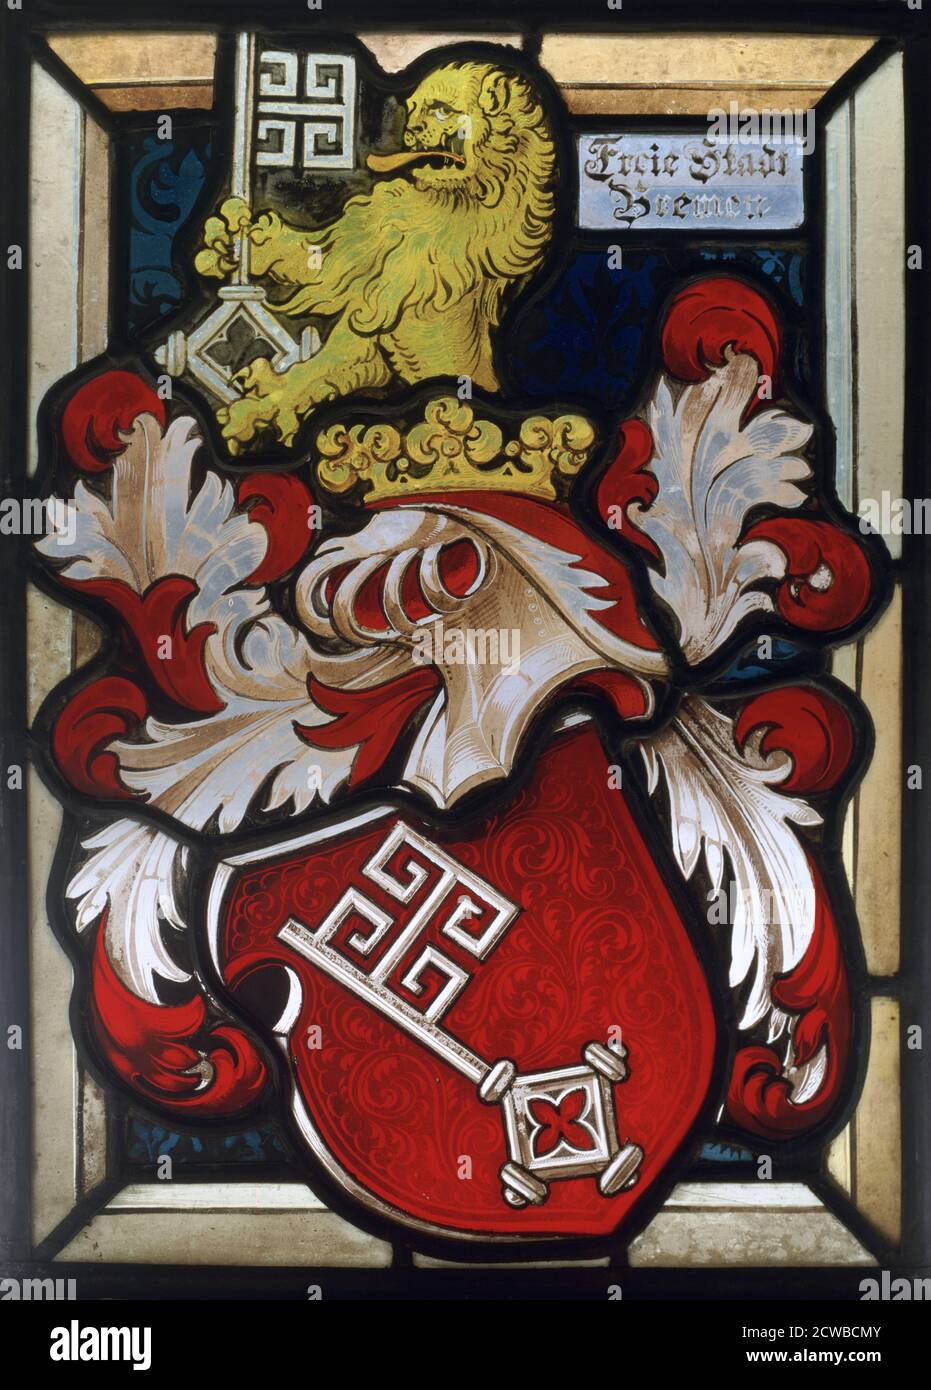 Wappen, 16. Jahrhundert. Buntglasfenster eines Wappenkeisters, das einen Löwen mit einem Schlüssel zeigt, der einen gekrönten Helm überragt. Die Inschrift bezieht sich auf die Freiheit der Stadt Bremen in Deutschland, aber der Künstler ist unbekannt. Stockfoto